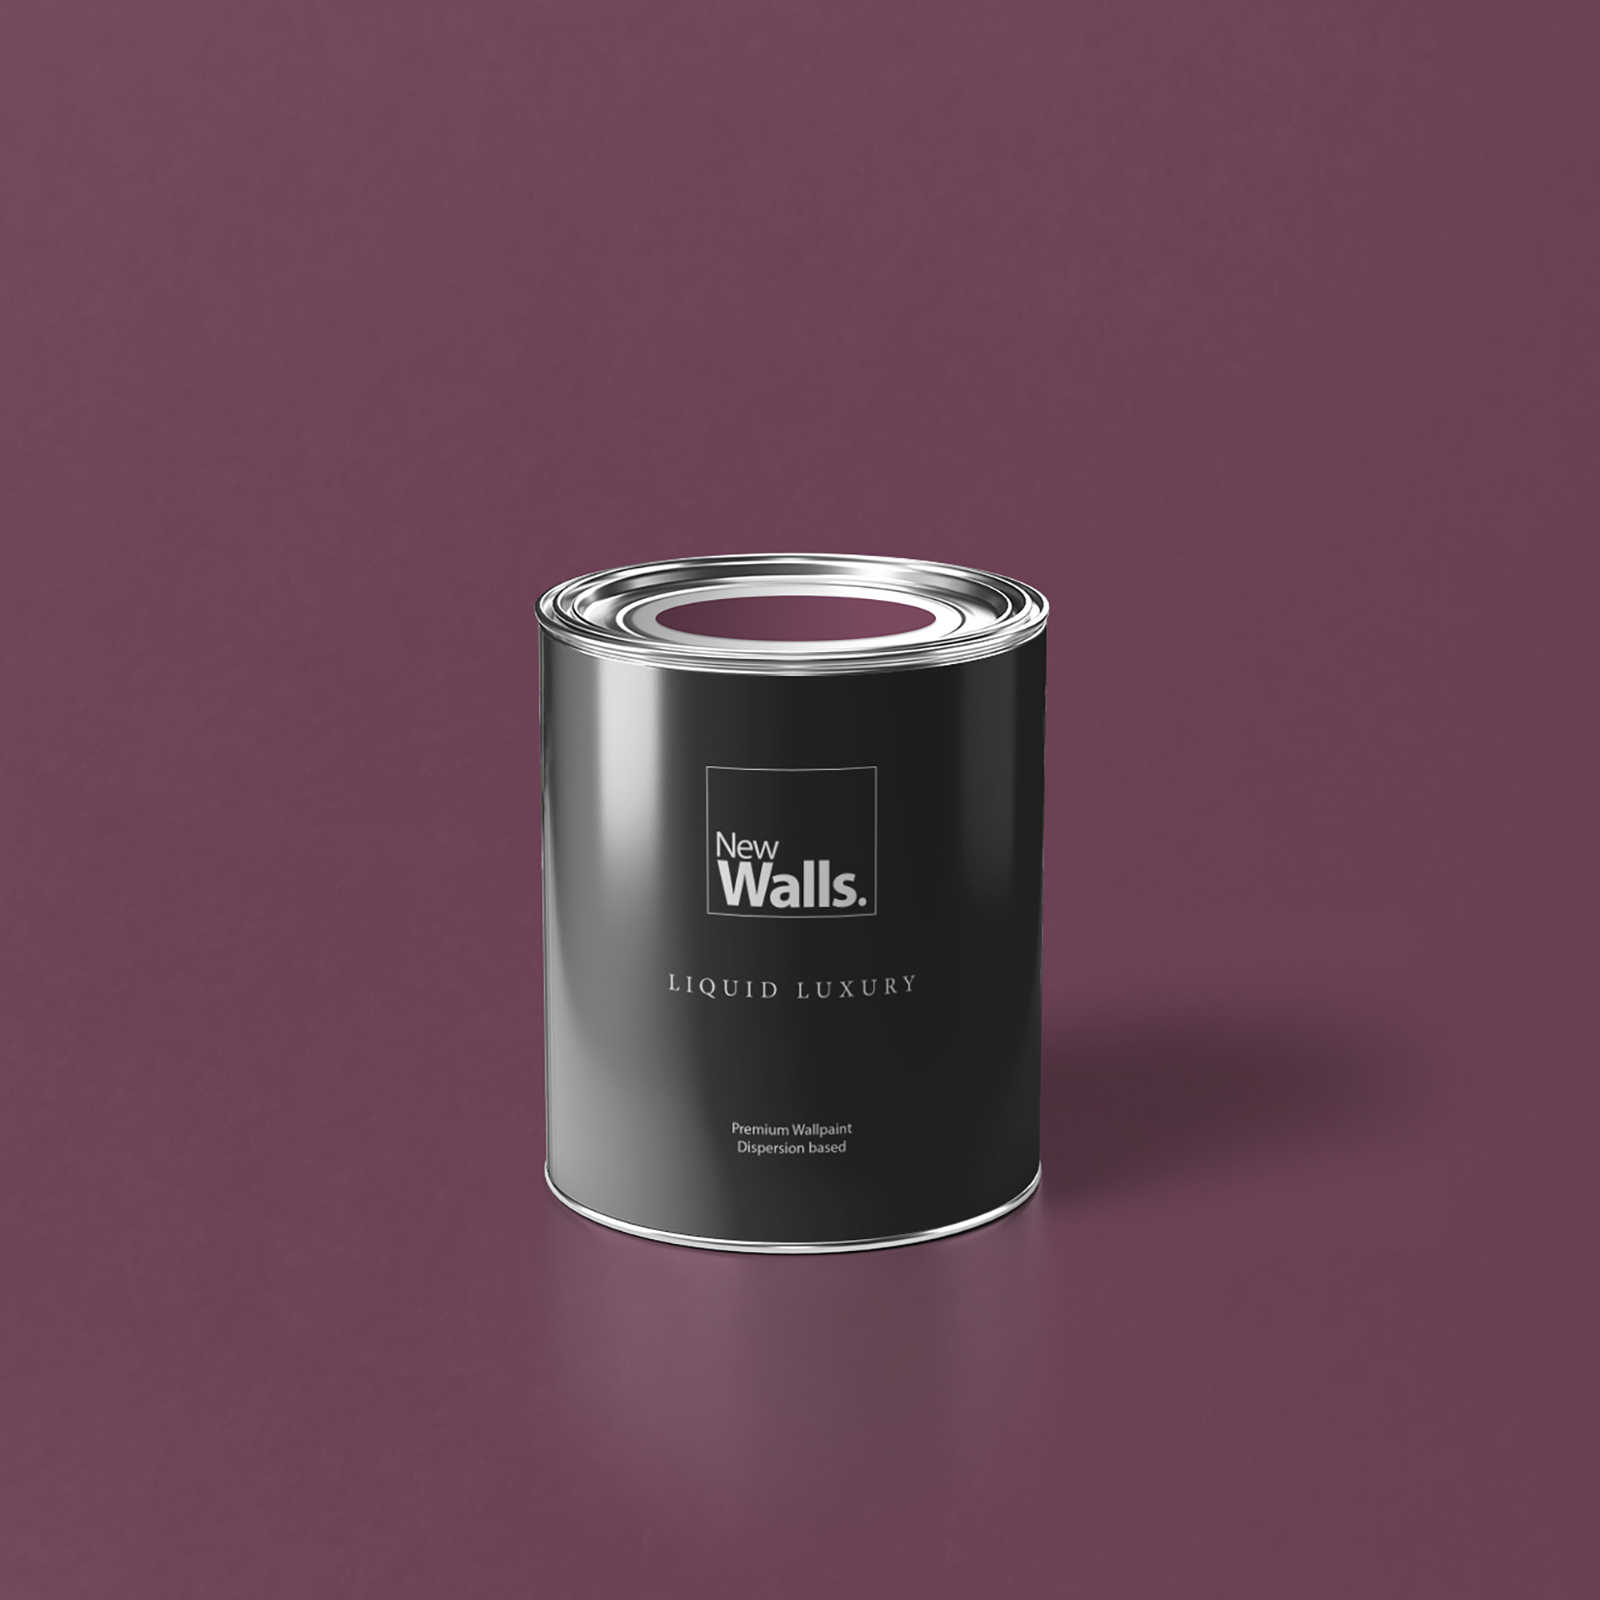         Premium Wandfarbe kräftige Beere »Beautiful Berry« NW212 – 1 Liter
    